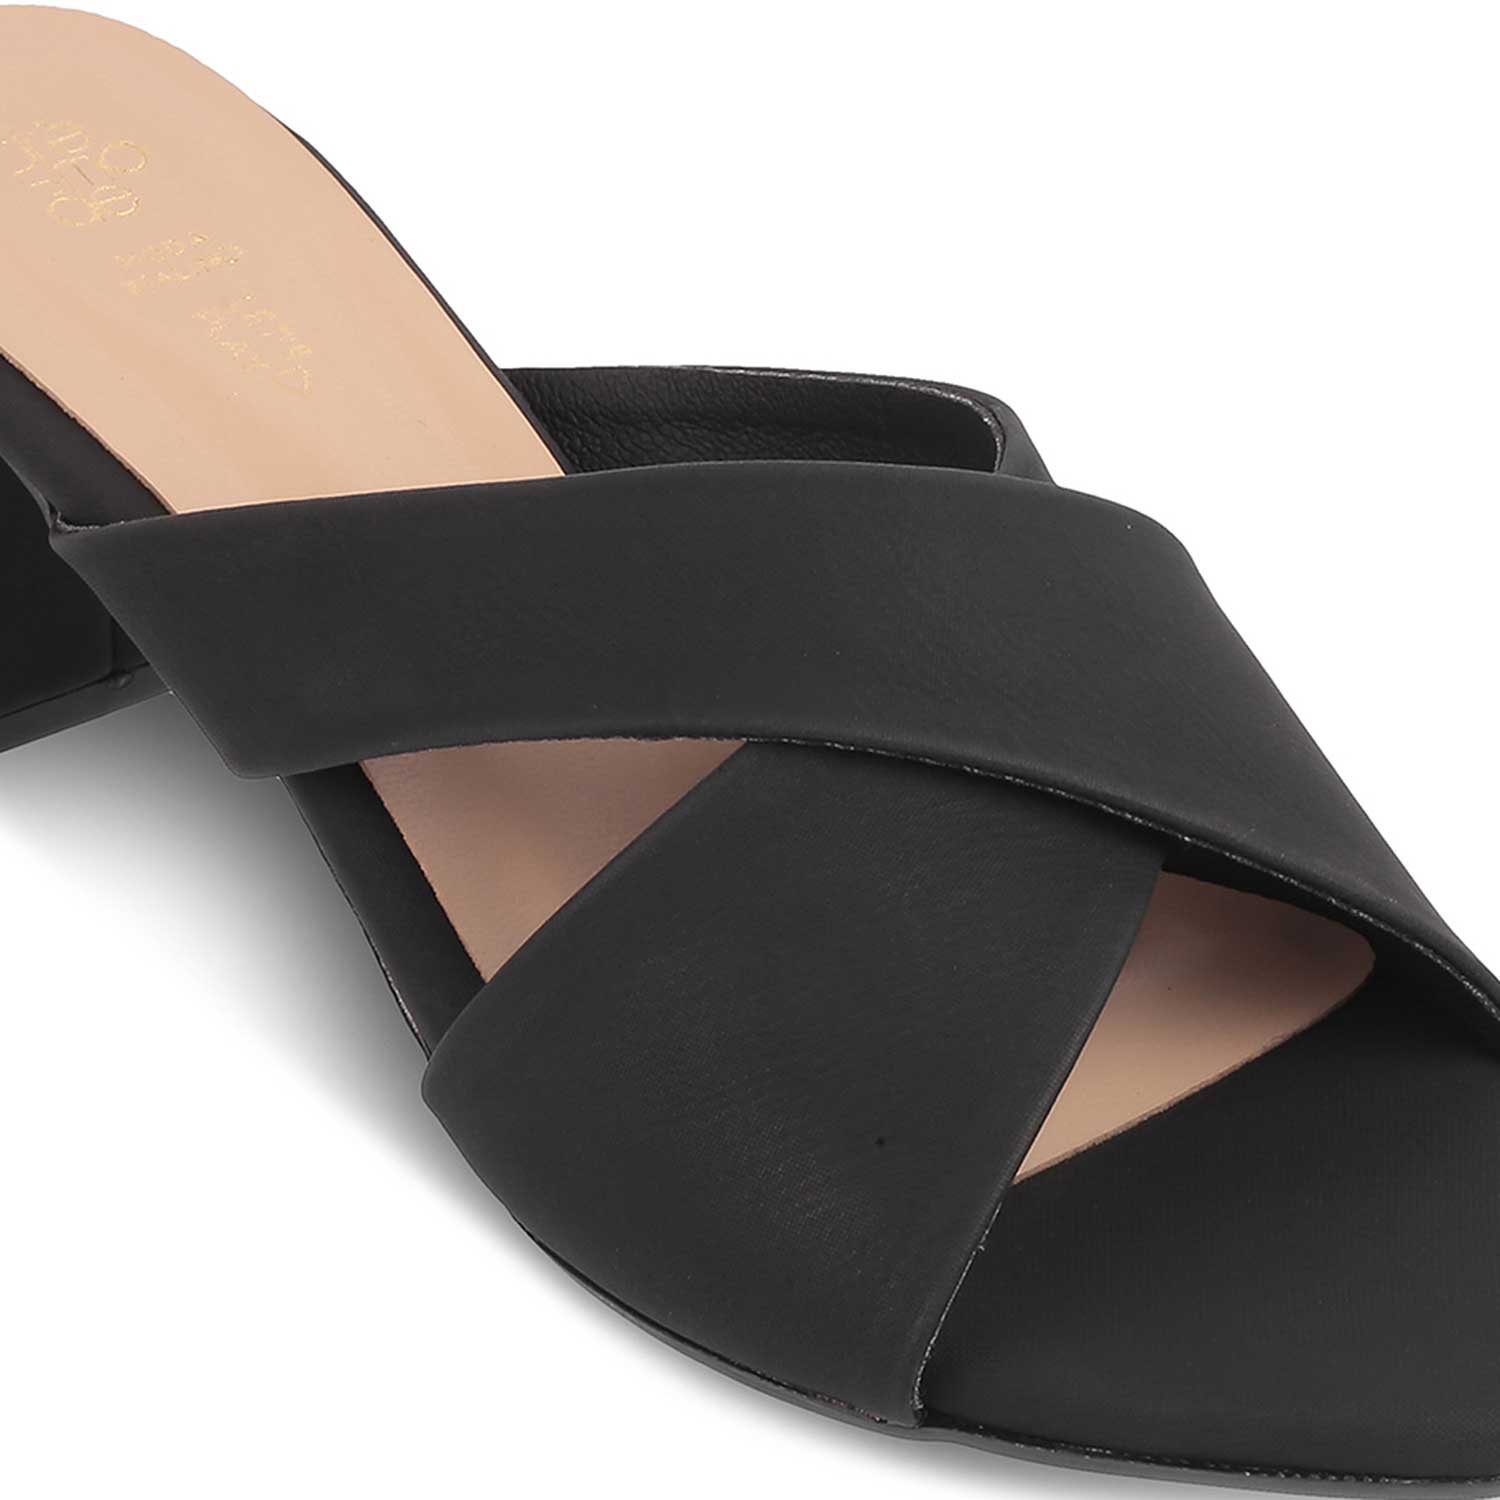 The Lisburn Black Women's Dress Block Heel Sandals Tresmode - Tresmode